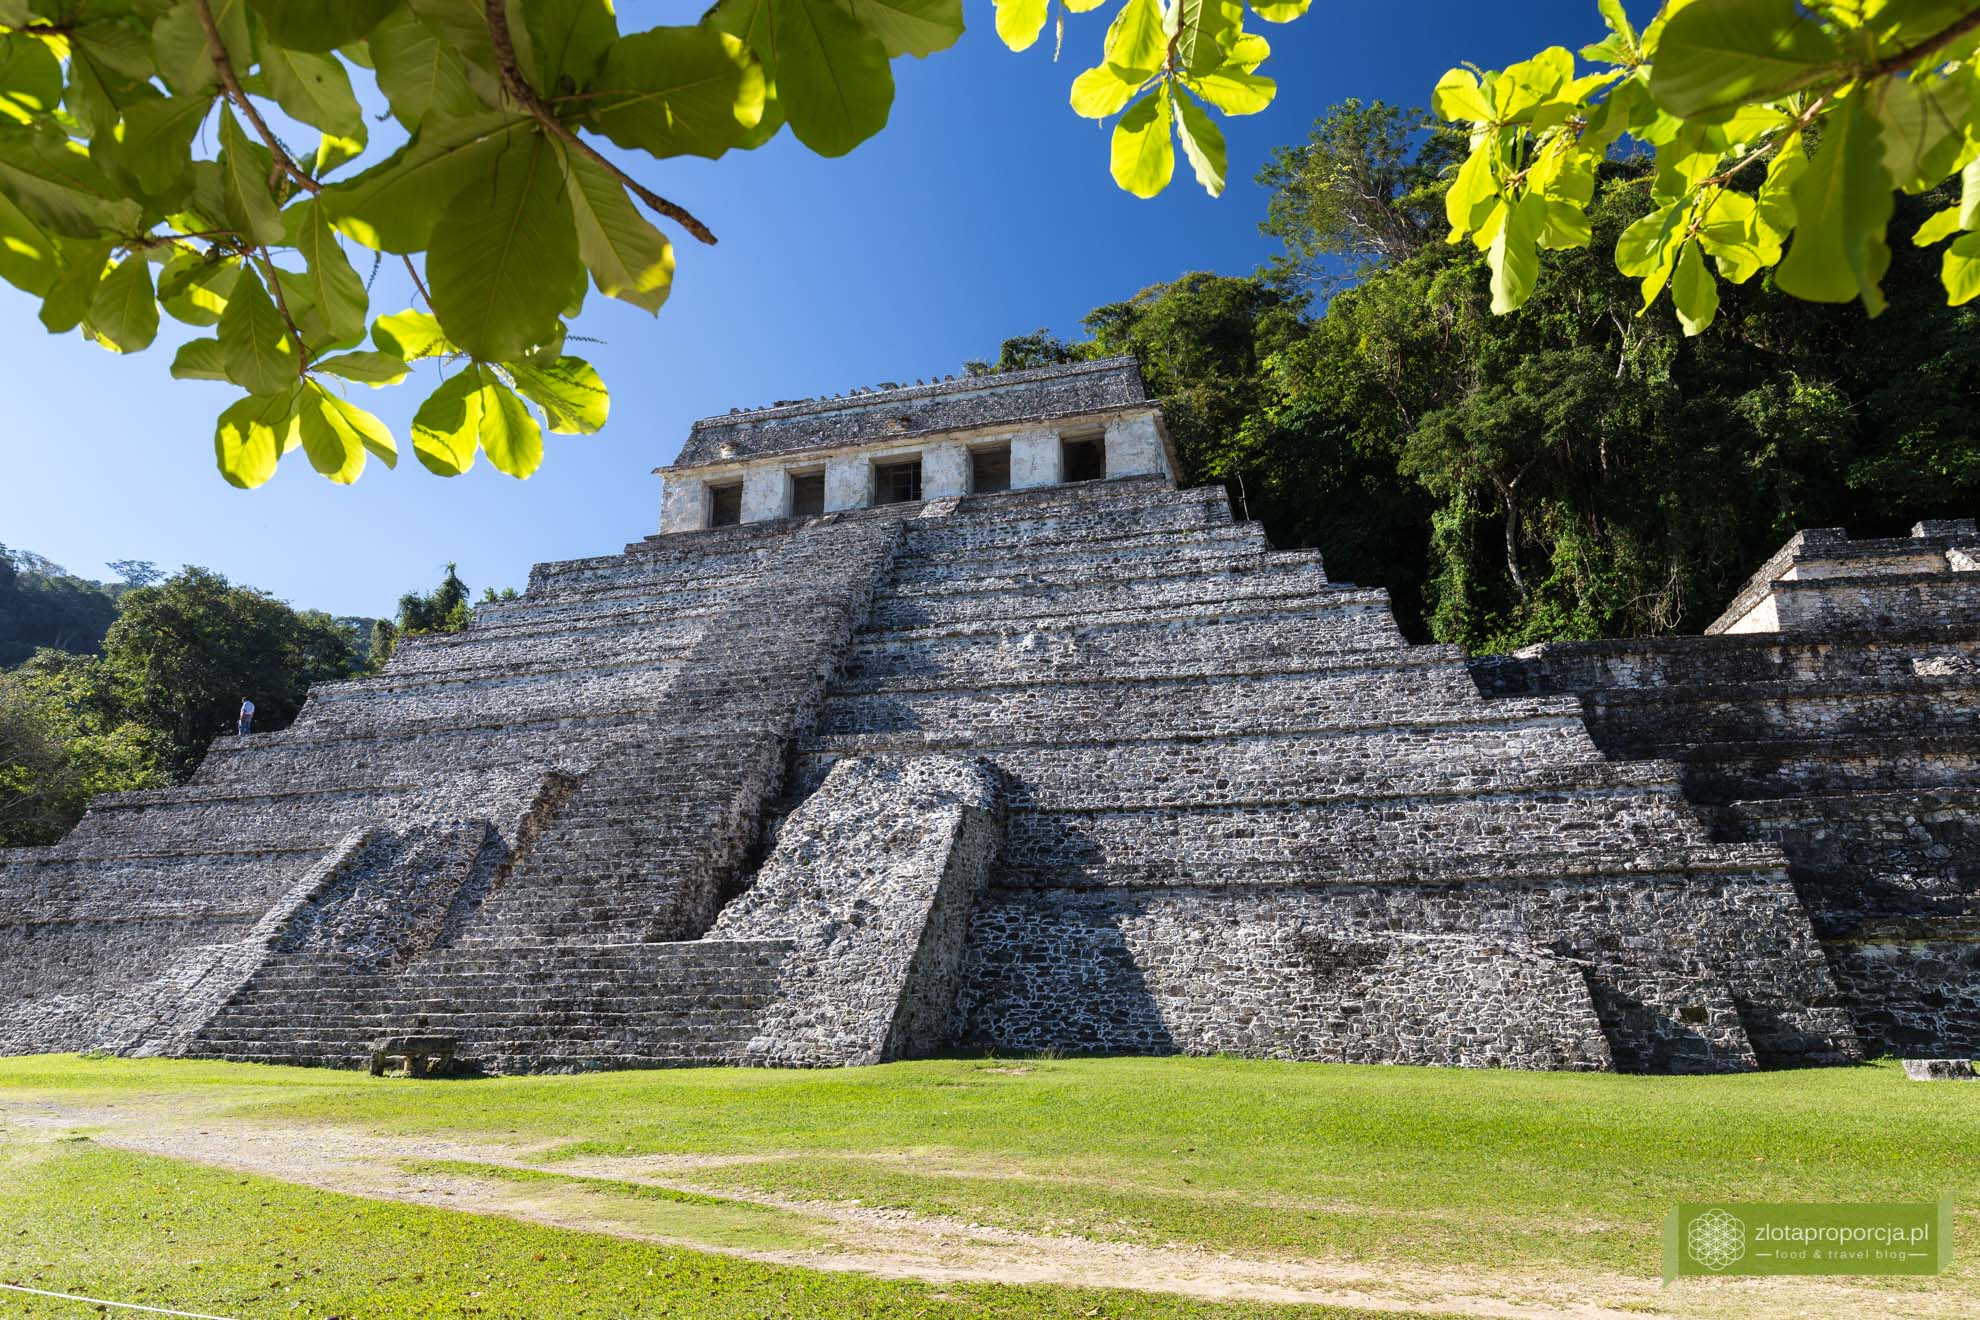 Meksyk, Miasta Majów, strefy archeologiczne na Jukatanie; Majowie budowle, Miasta Majów Meksyk, Majowie osiągnięcia; Palenque, Miasta Majów Chiapas, Chiapas; 